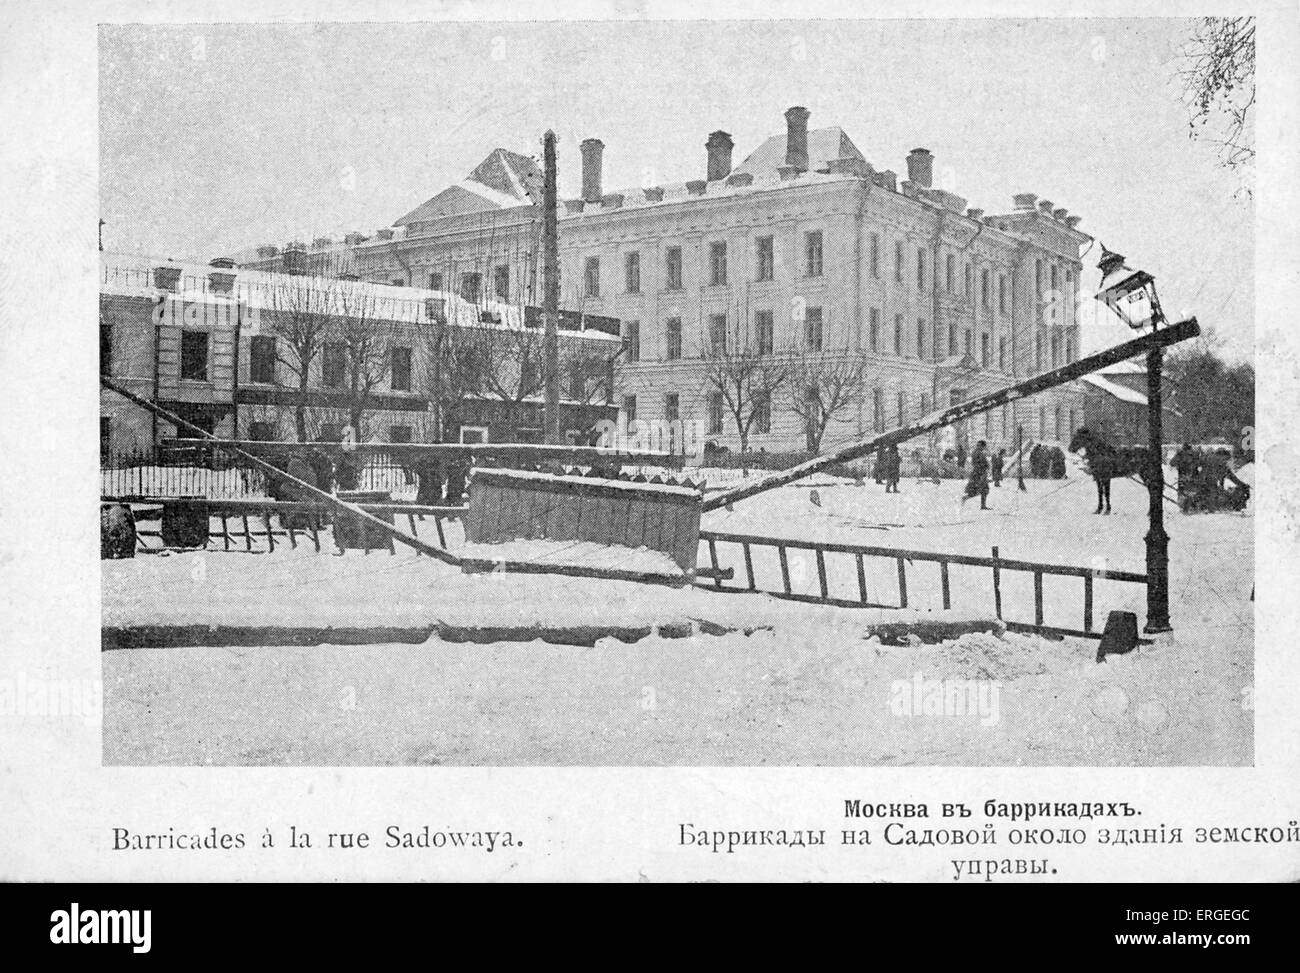 Street barricate durante 1905 Rivoluzione Russa - Sadovaya Street, Mosca. Ondata di massa politico e sociale che si diffondono attraverso vaste aree dell'impero russo (1905 - 1908). Sconfitto da Nicholas II. Foto Stock